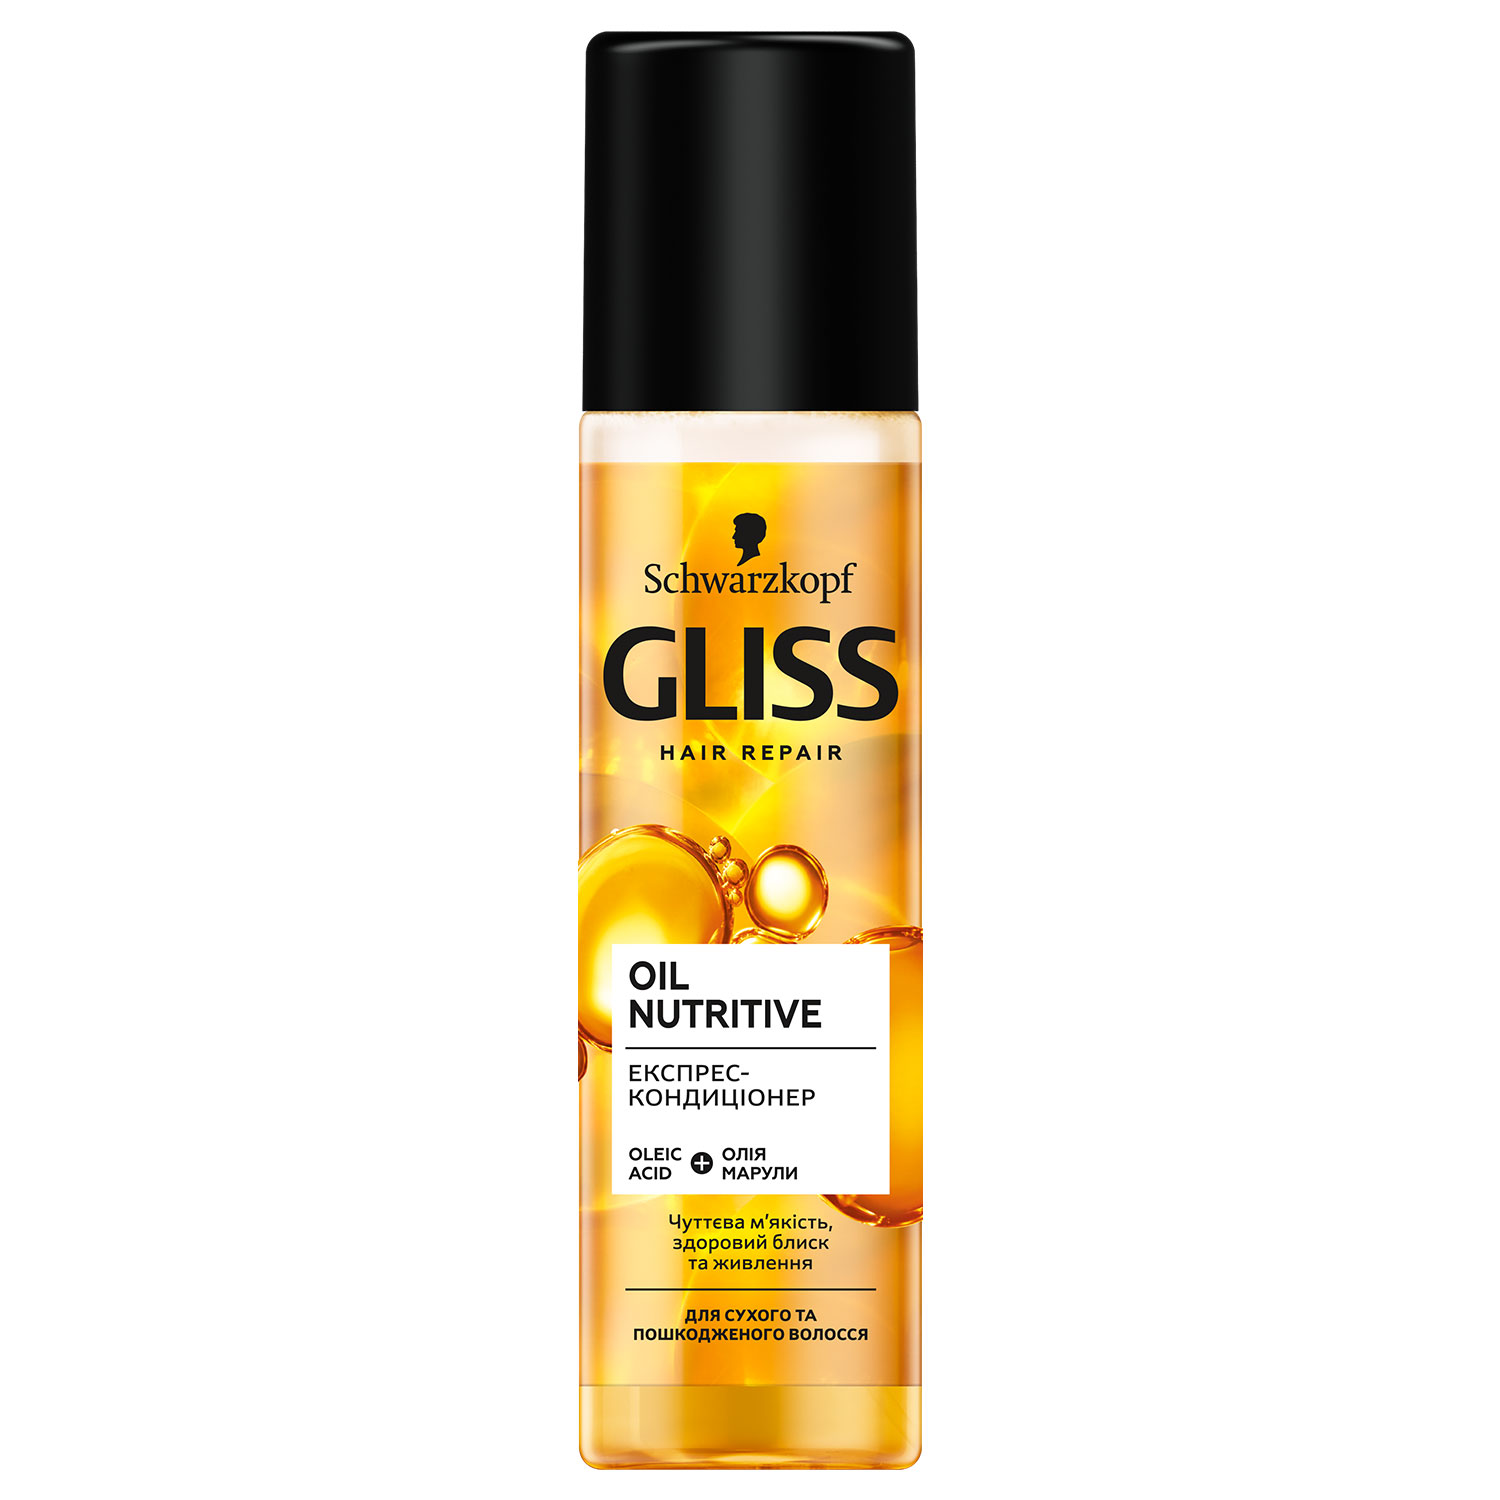 Експрес-кондиціонер GLISS Oil Nutritive для сухого та пошкодженого волосся 200 мл